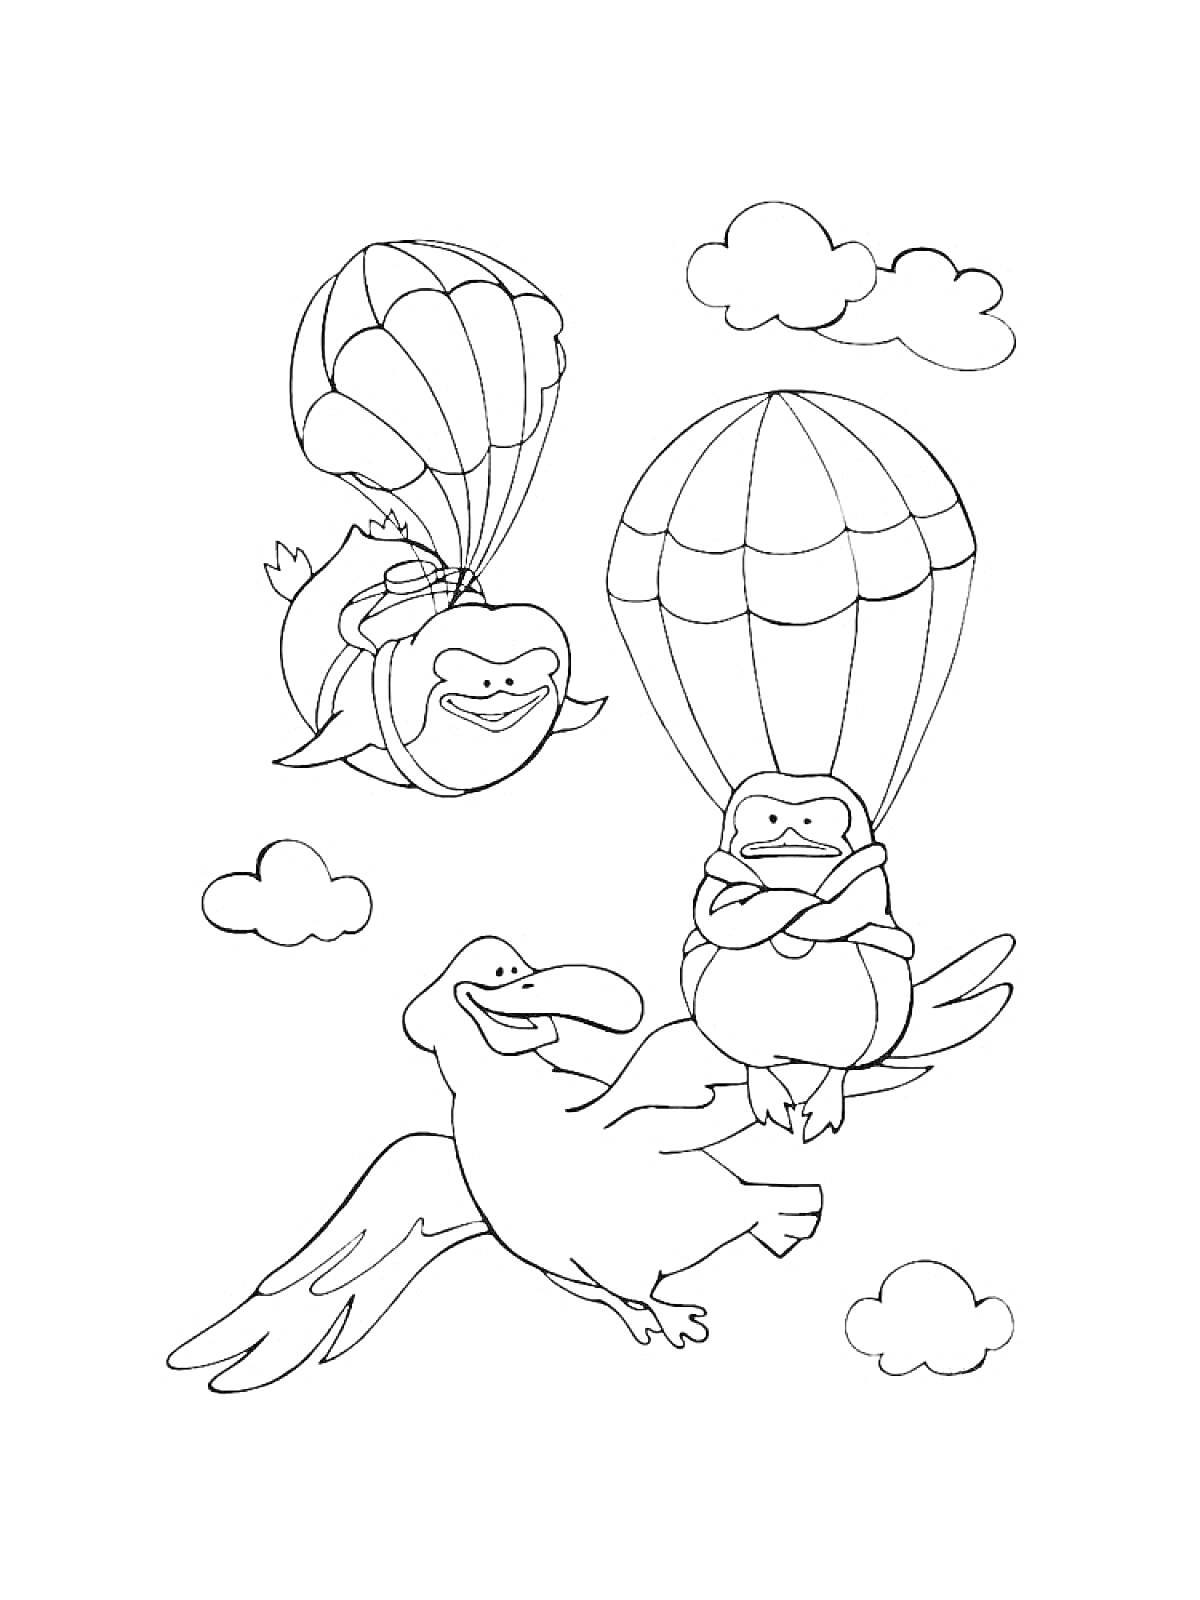 Два катящихся зверька с парашютами и птица, летящая среди облаков